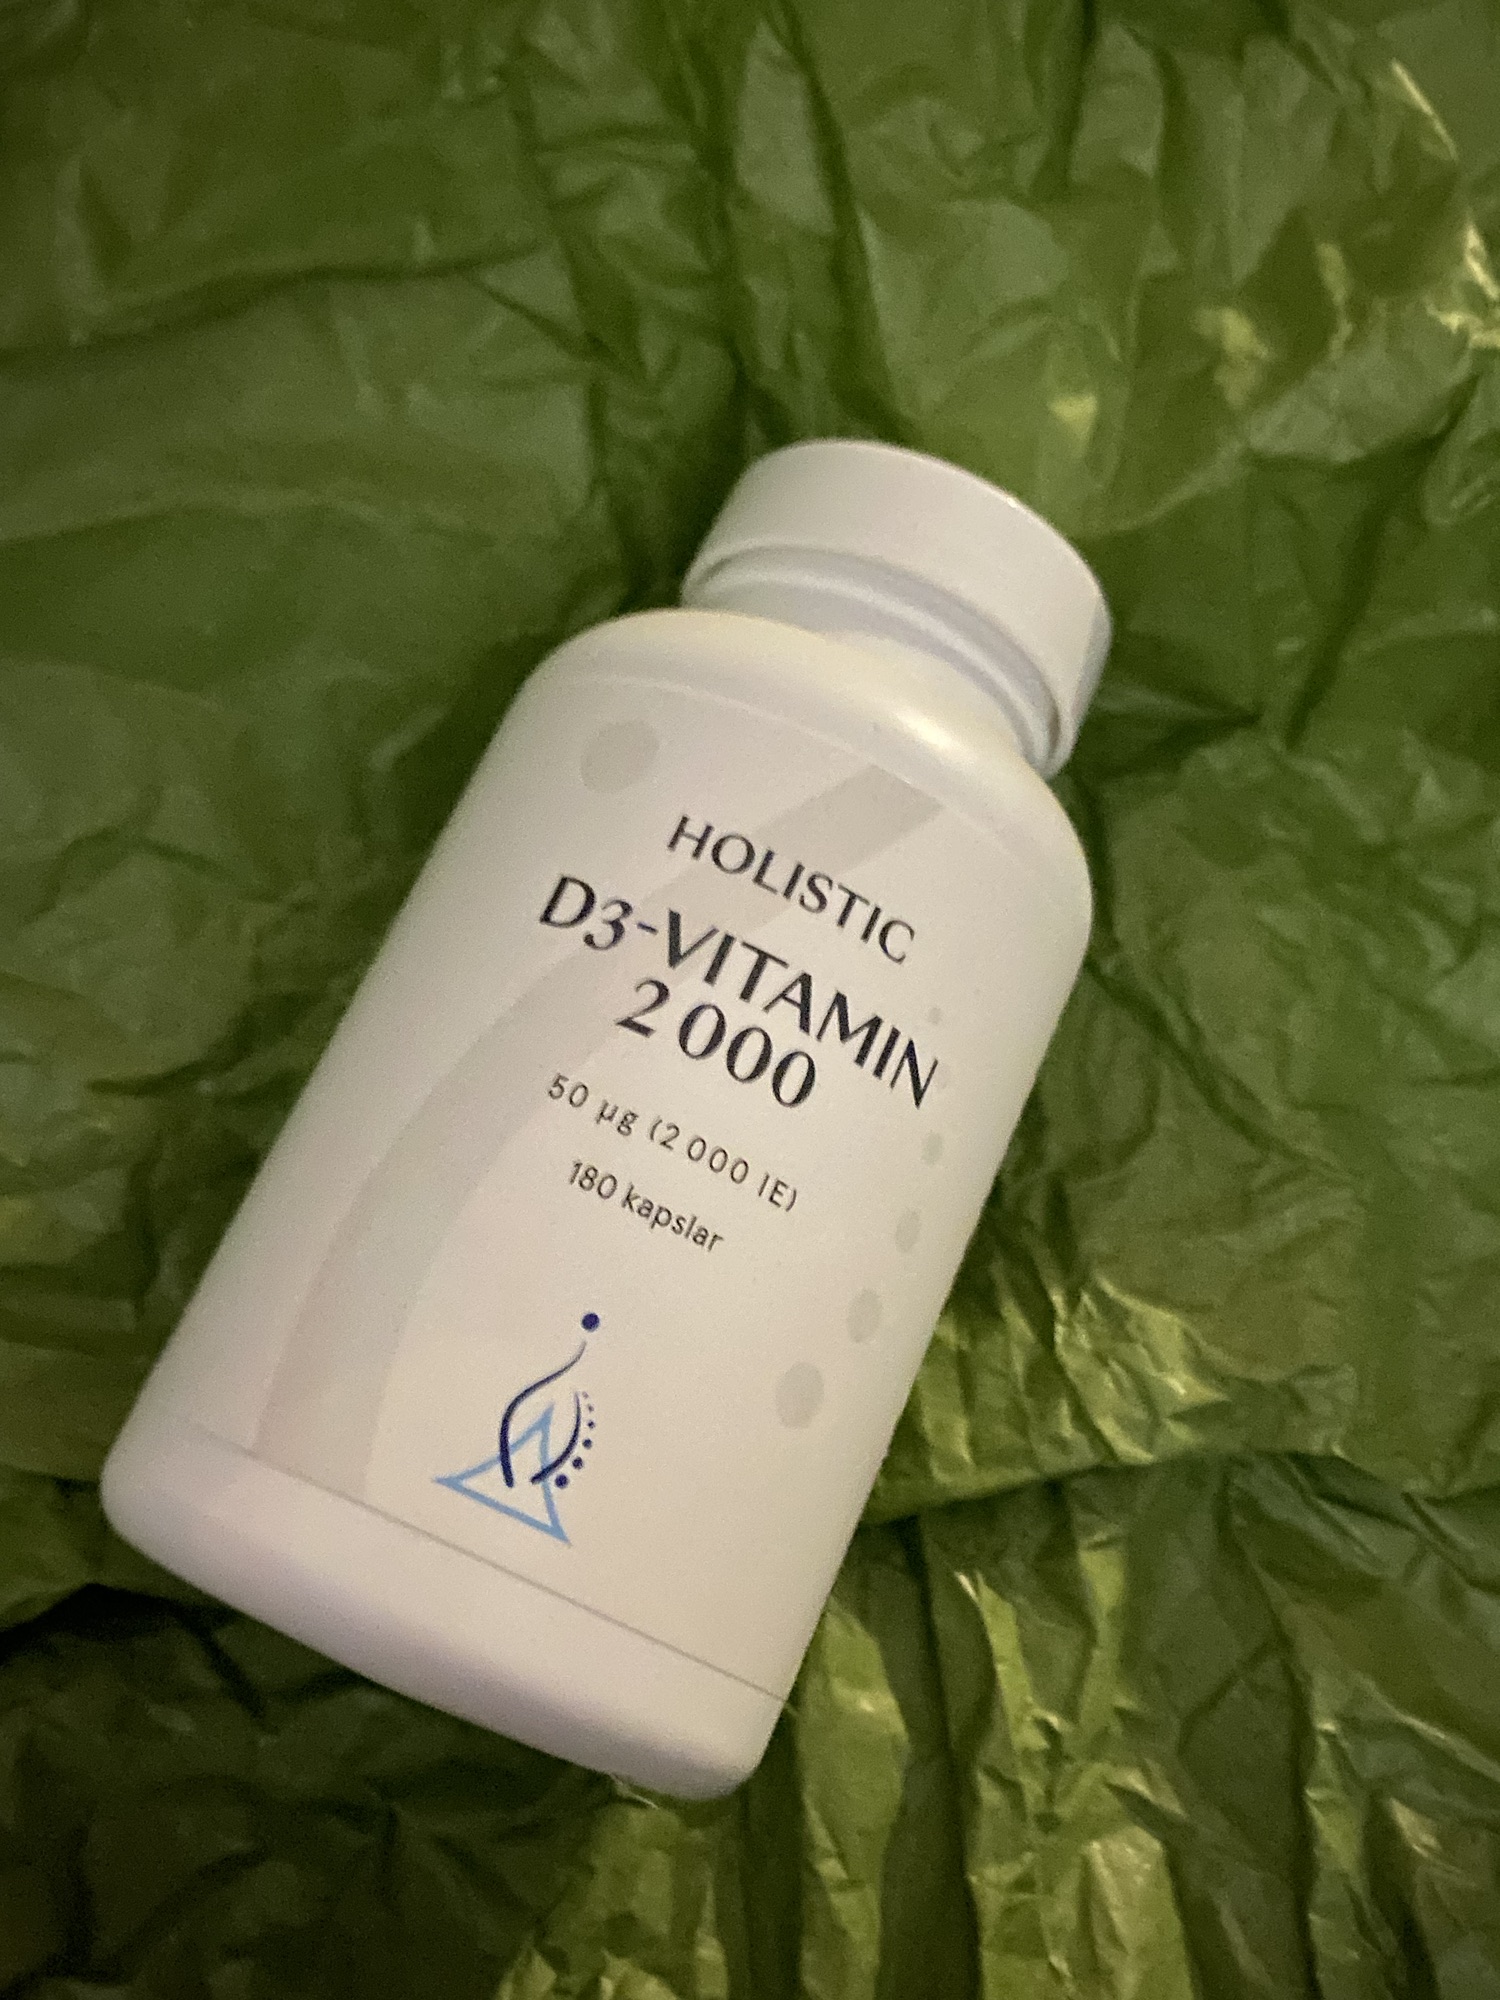 Holistic D3 vitamin 2000